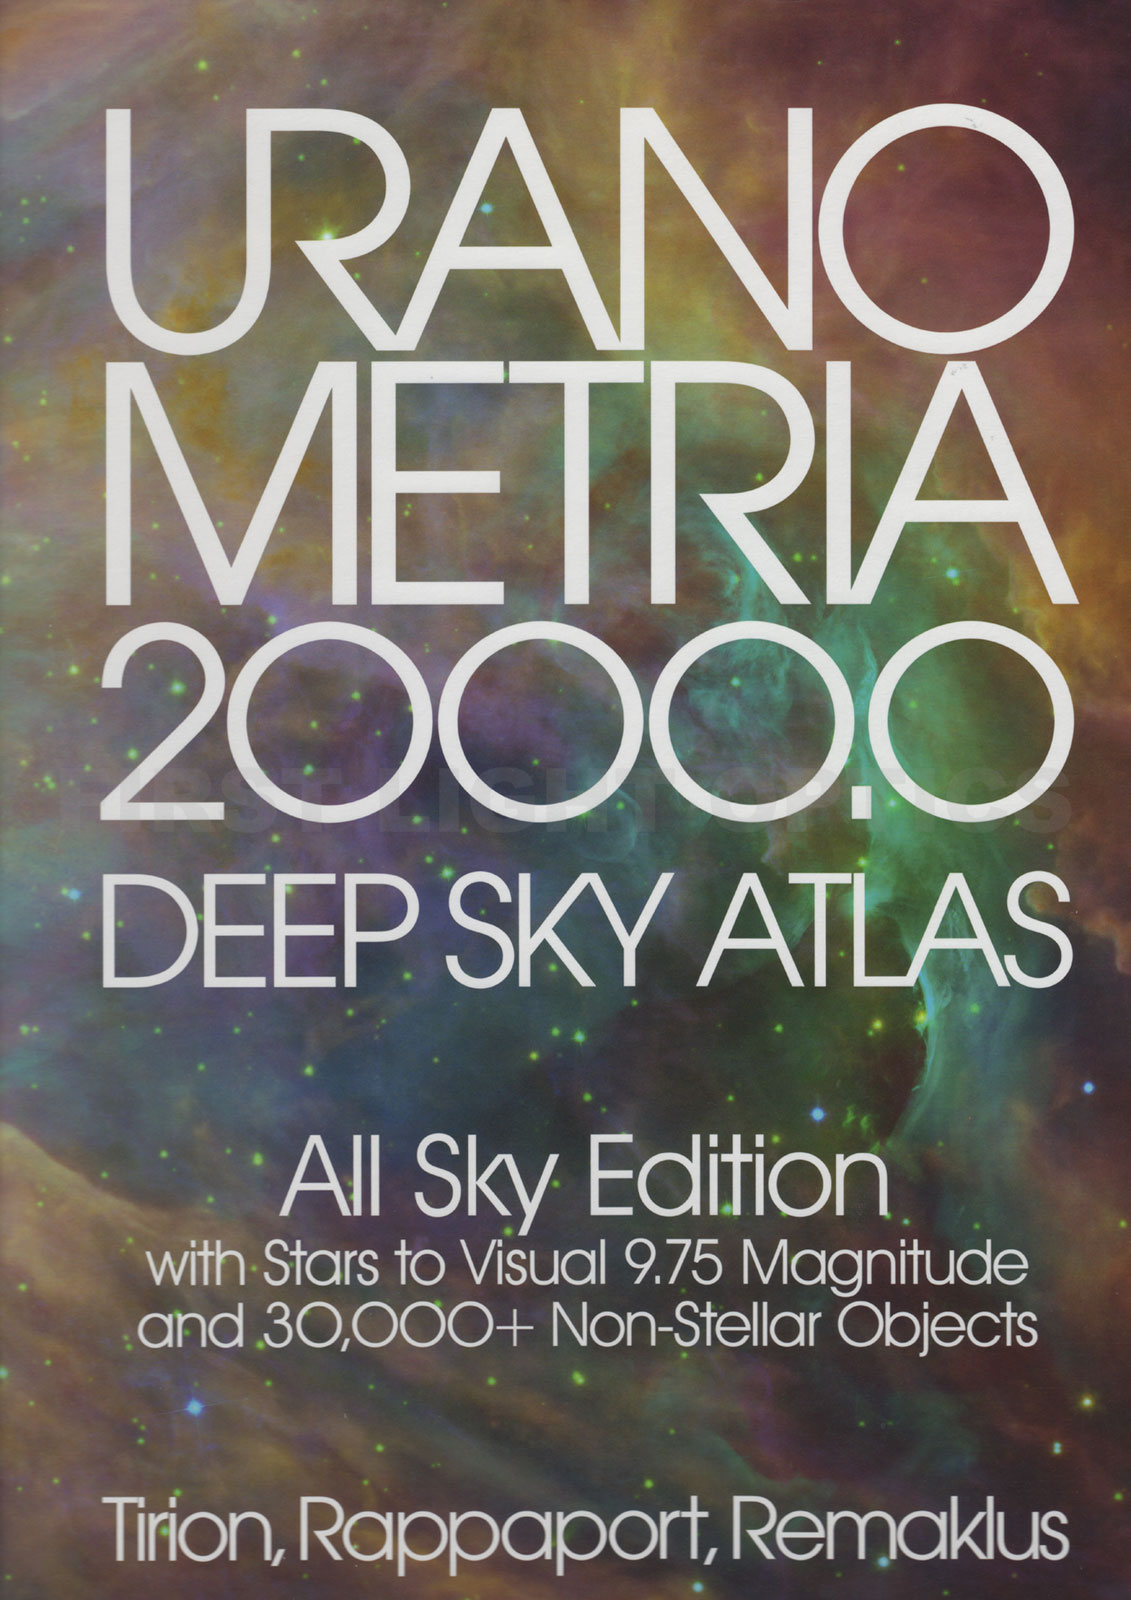 Uranometria 2000.0: Deep Sky Atlas All Sky Edition Book